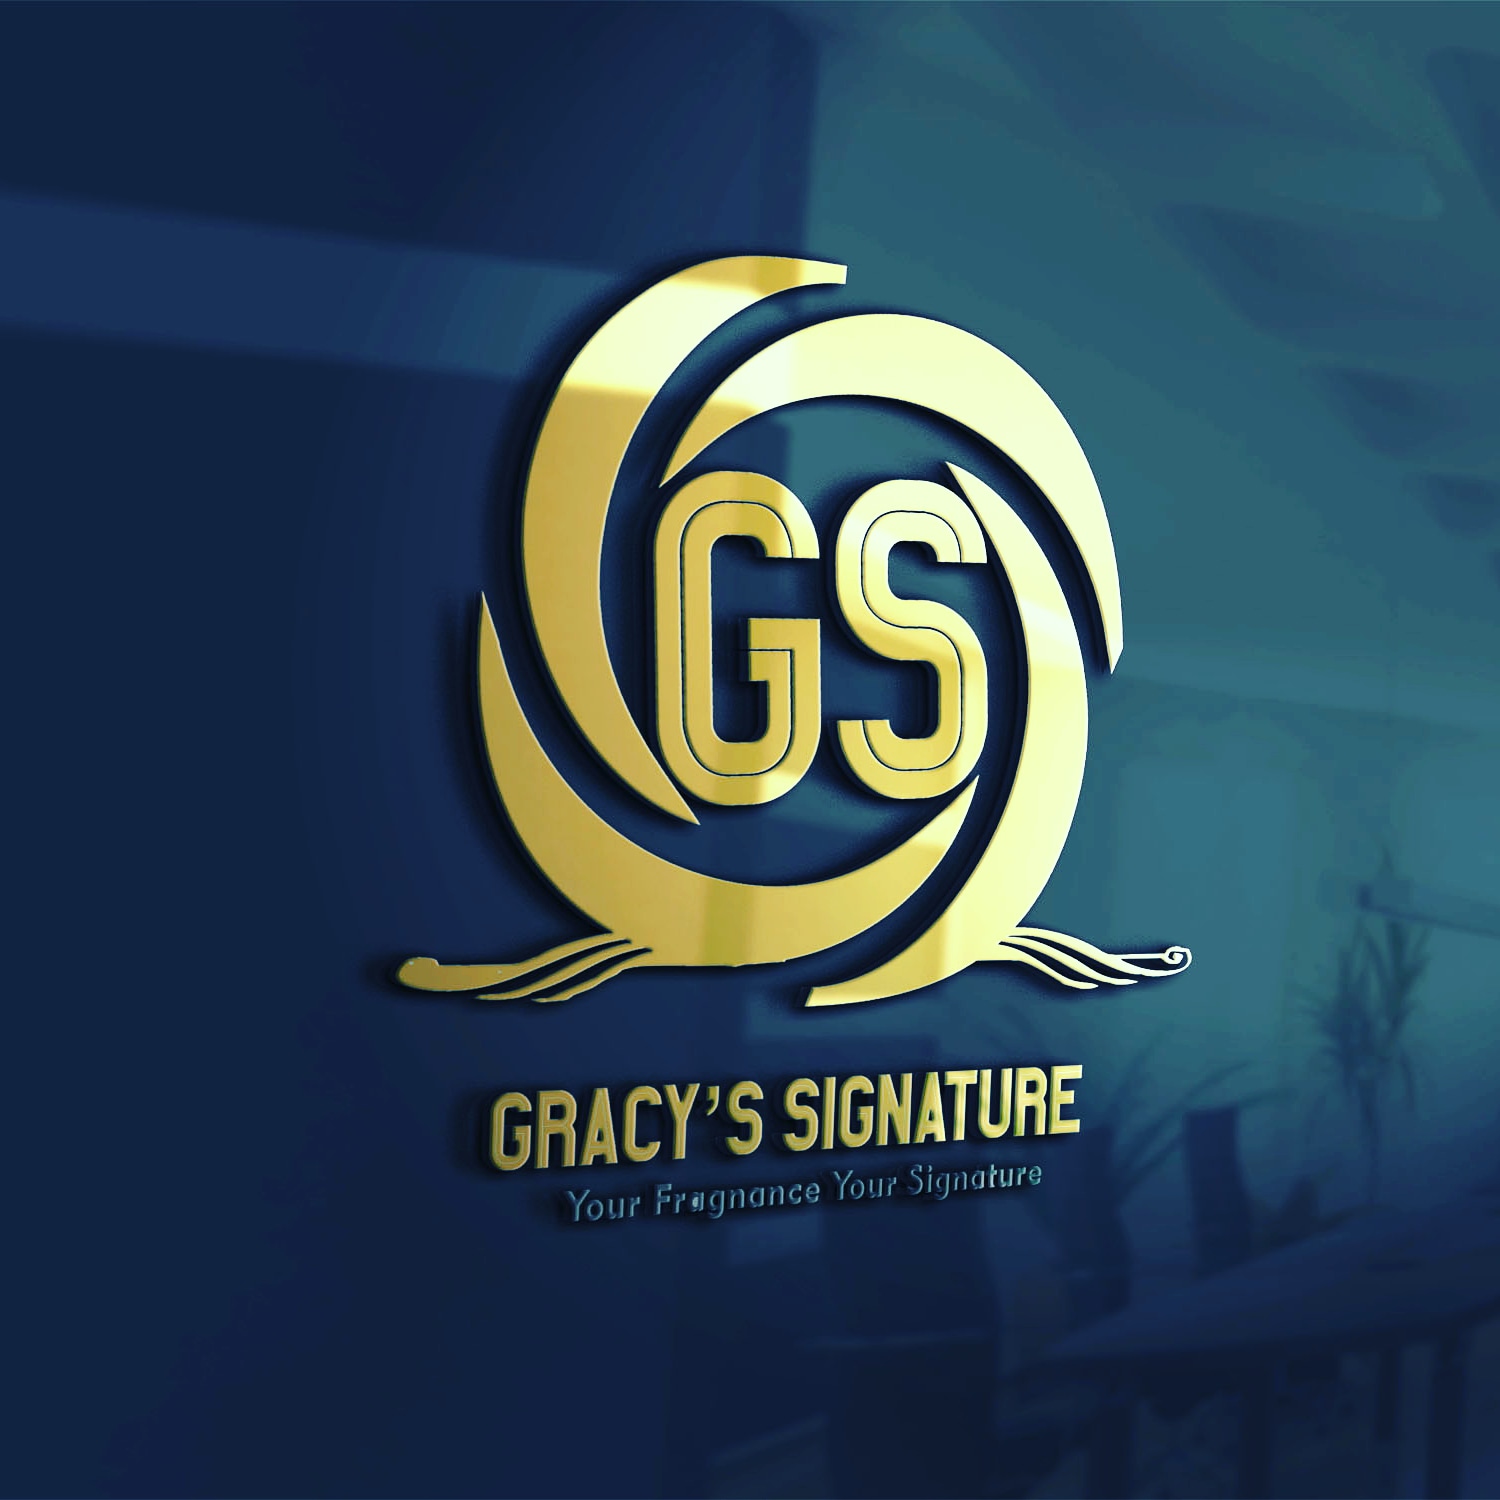 Gracy's Signature provider